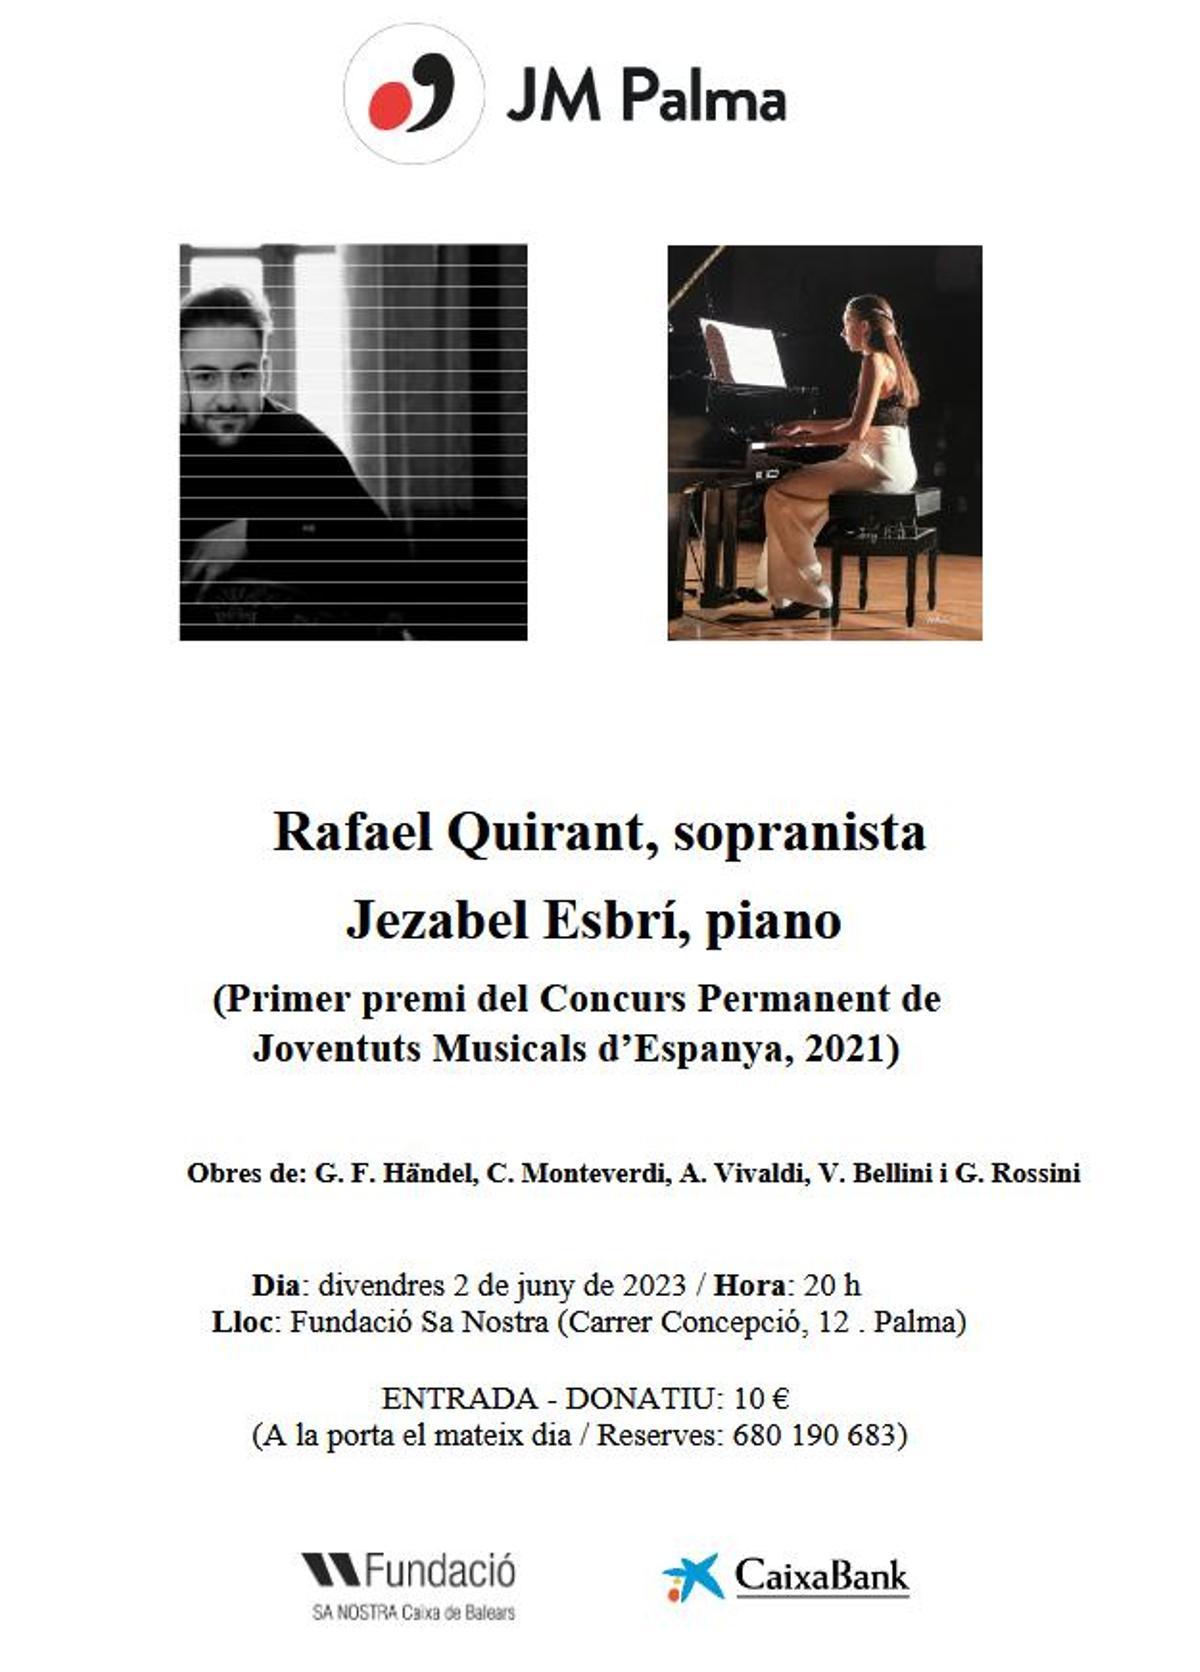 Cartel del evento de Juventuts Musicals en Palma con Rafael Quirant y Jezabel Esbrí.